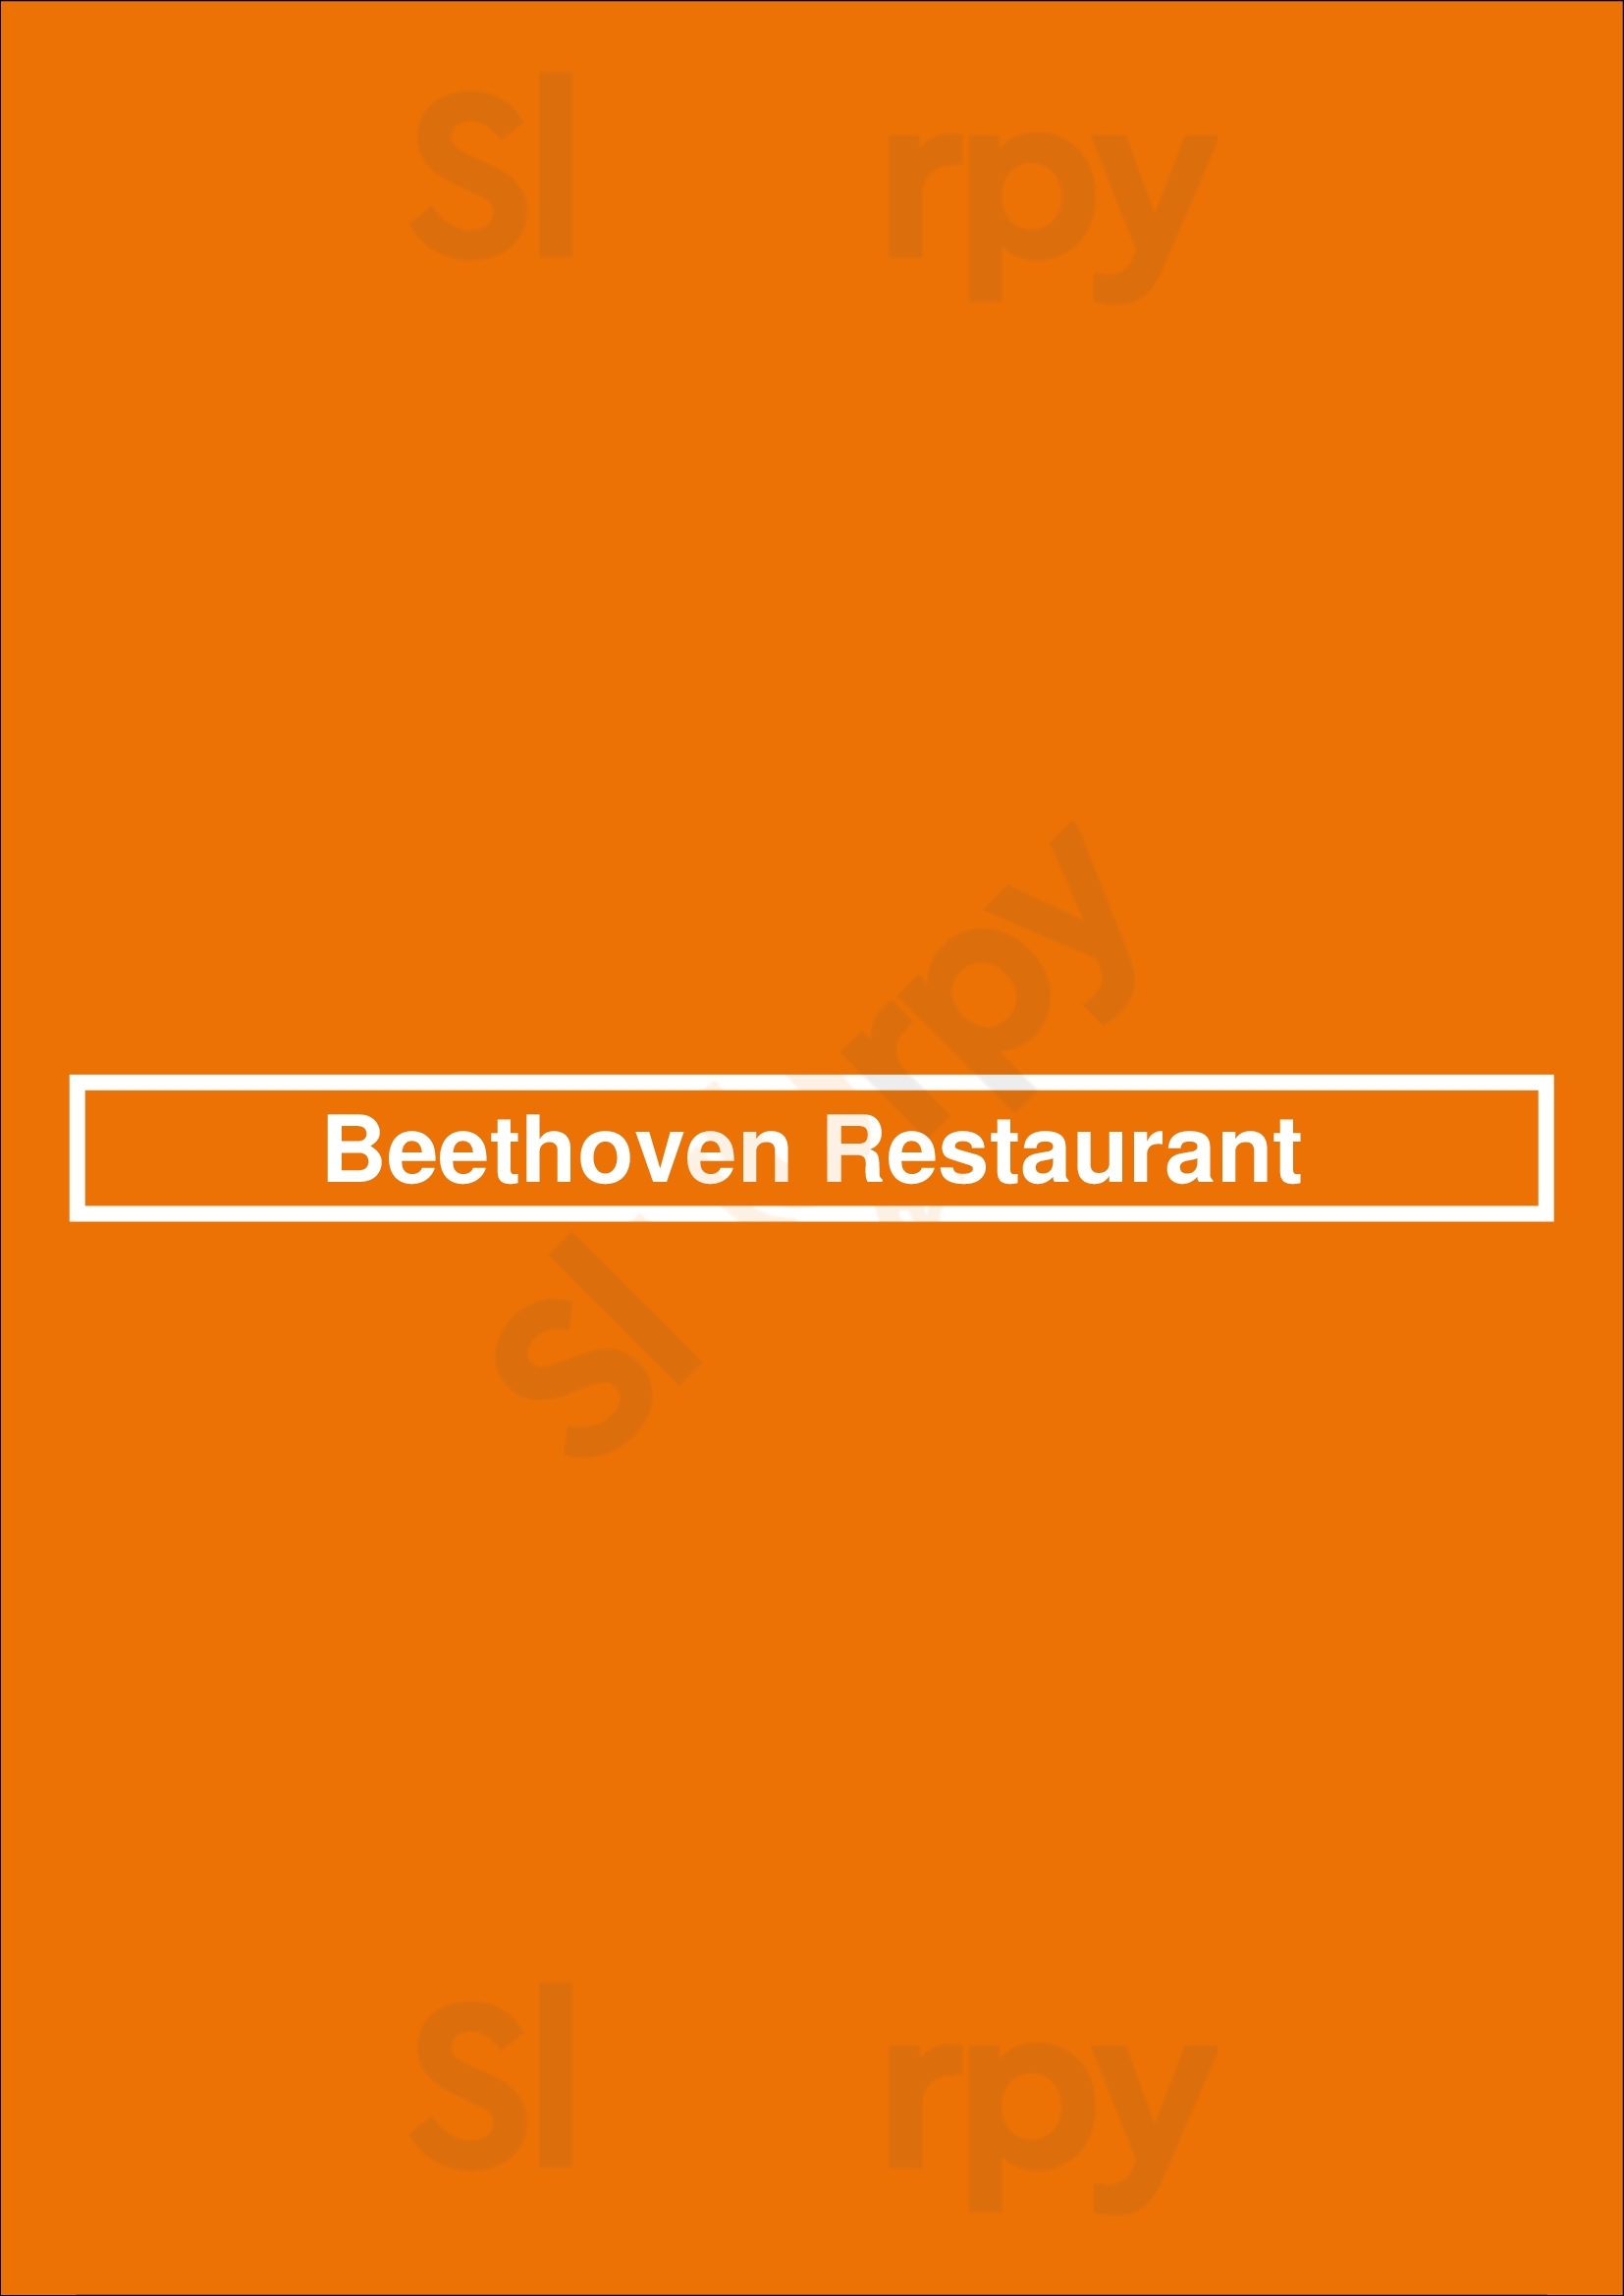 Beethoven Restaurant Bruges Menu - 1